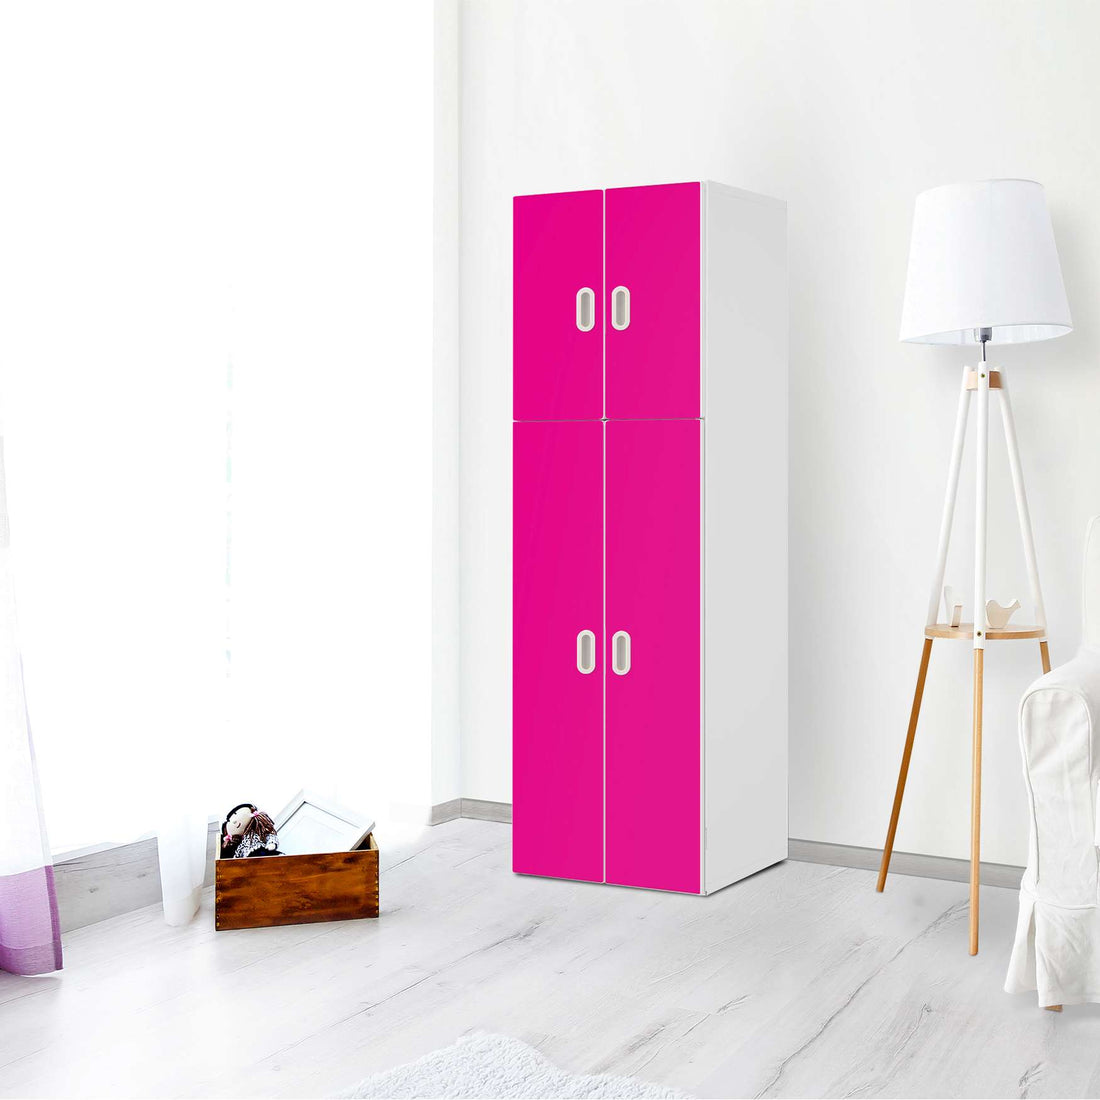 Selbstklebende Folie Pink Dark - IKEA Stuva / Fritids kombiniert - 2 große Türen und 2 kleine Türen - Kinderzimmer